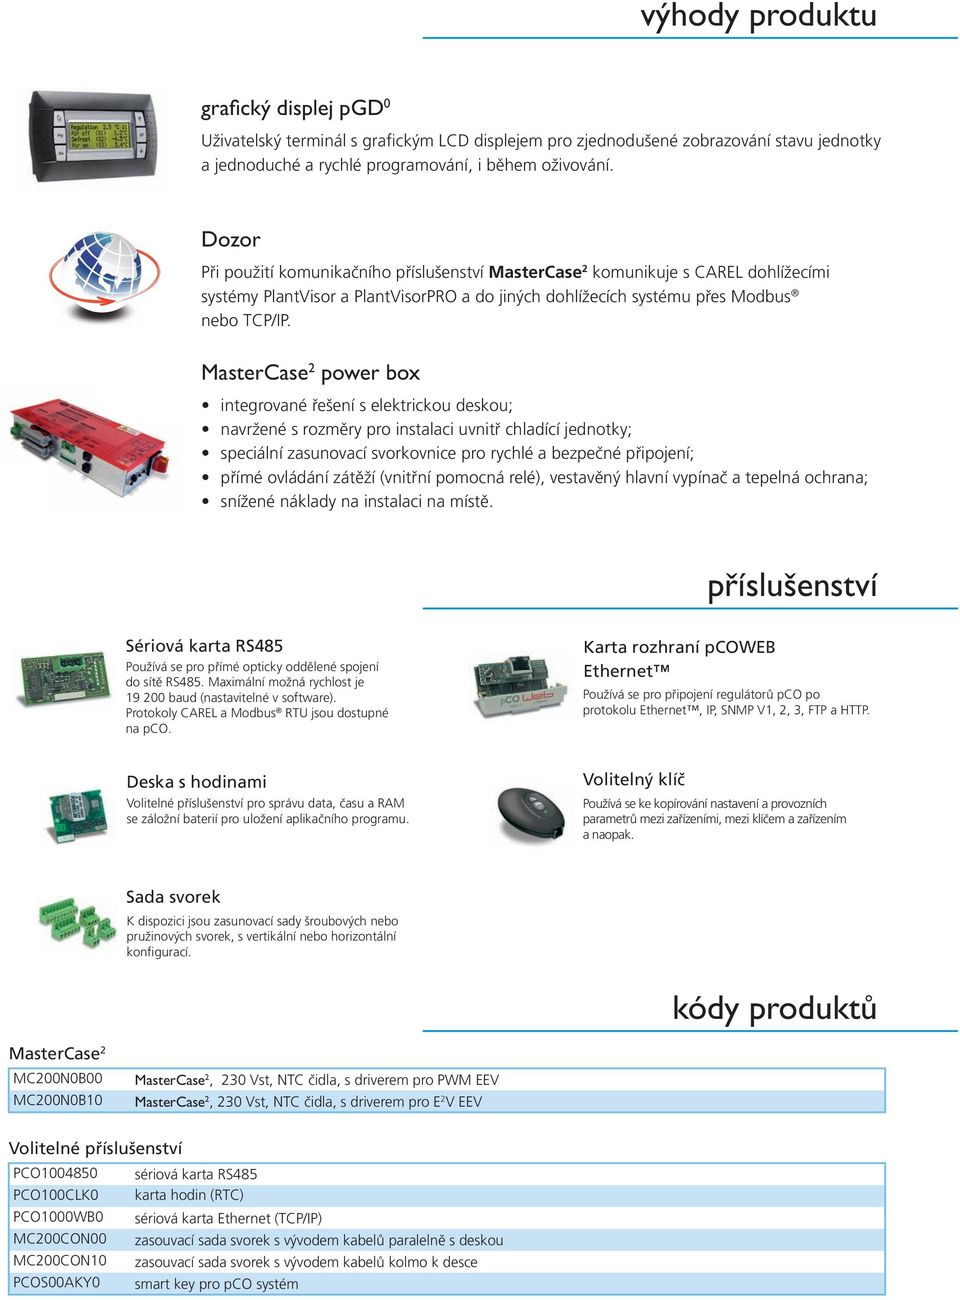 MasterCase 2 power box integrované řešení s elektrickou deskou; navržené s rozměry pro instalaci uvnitř chladící jednotky; speciální zasunovací svorkovnice pro rychlé a bezpečné připojení; přímé